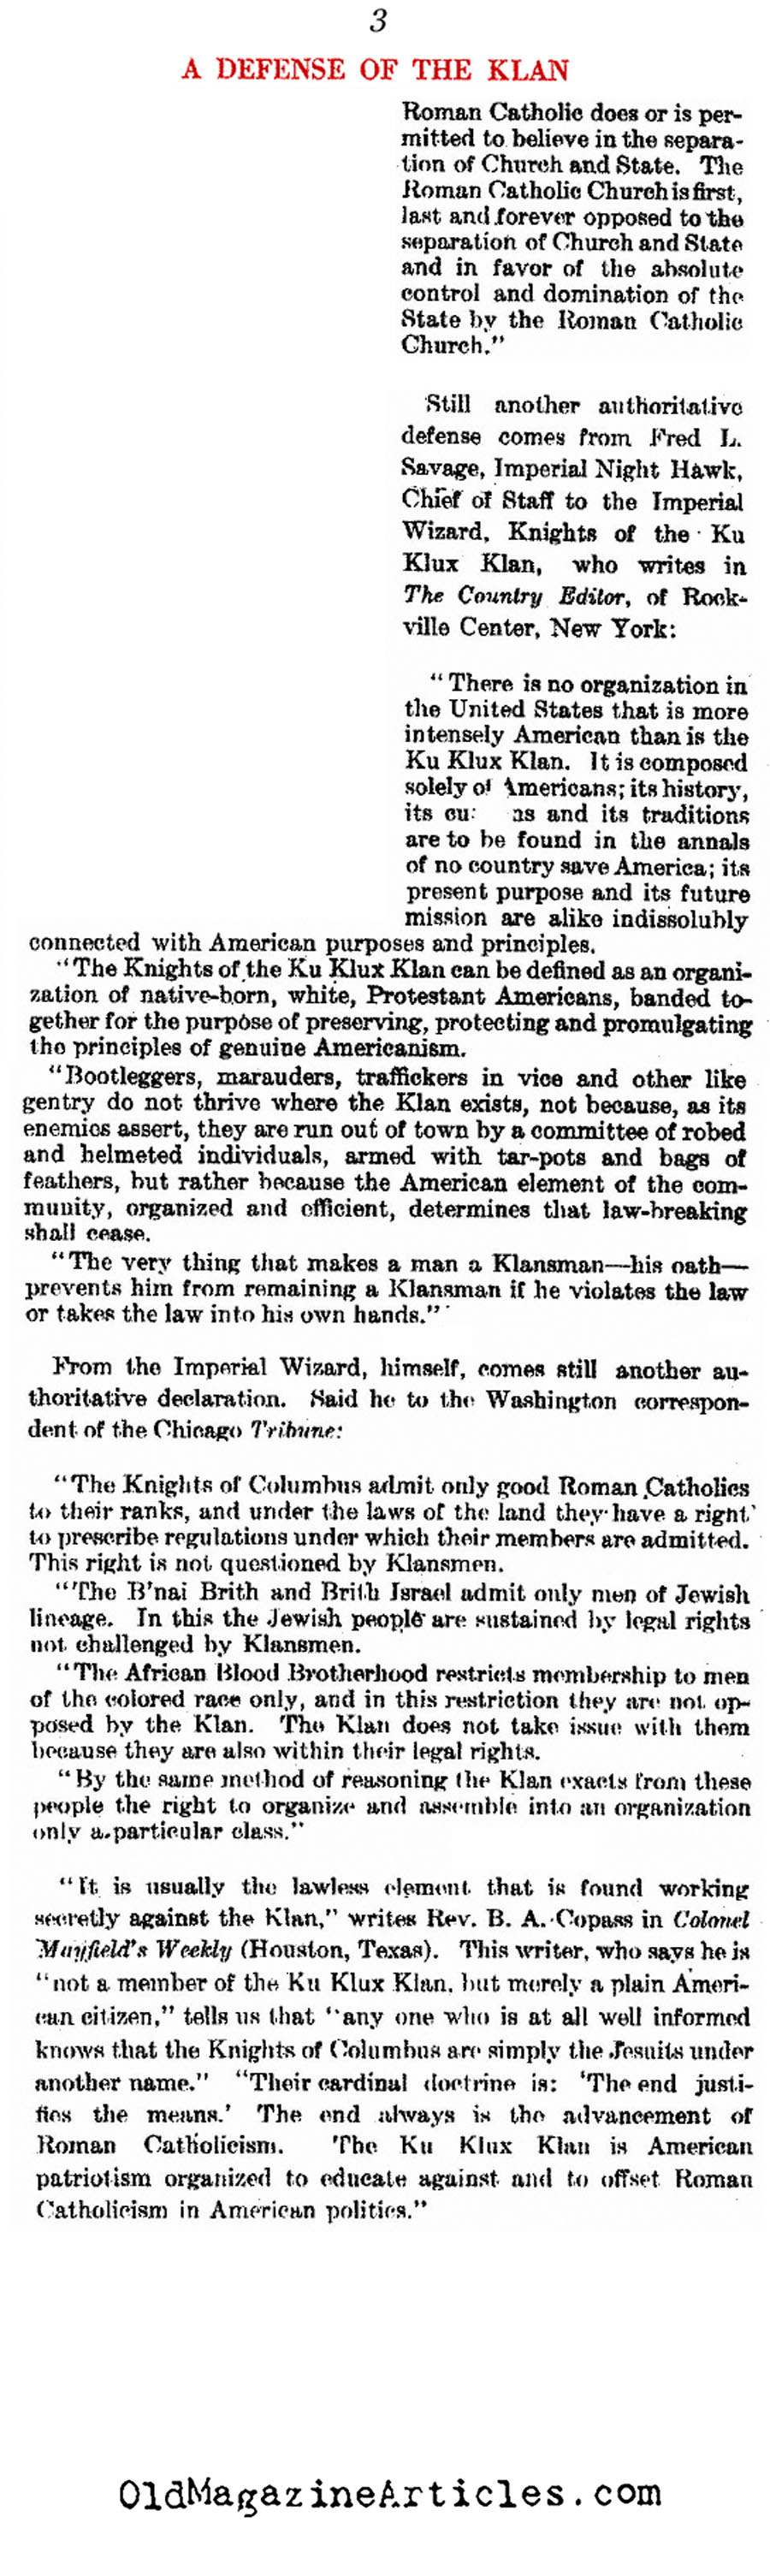 Lofty Words Printed on Behalf of the Klan (The Literary Digest, 1923)